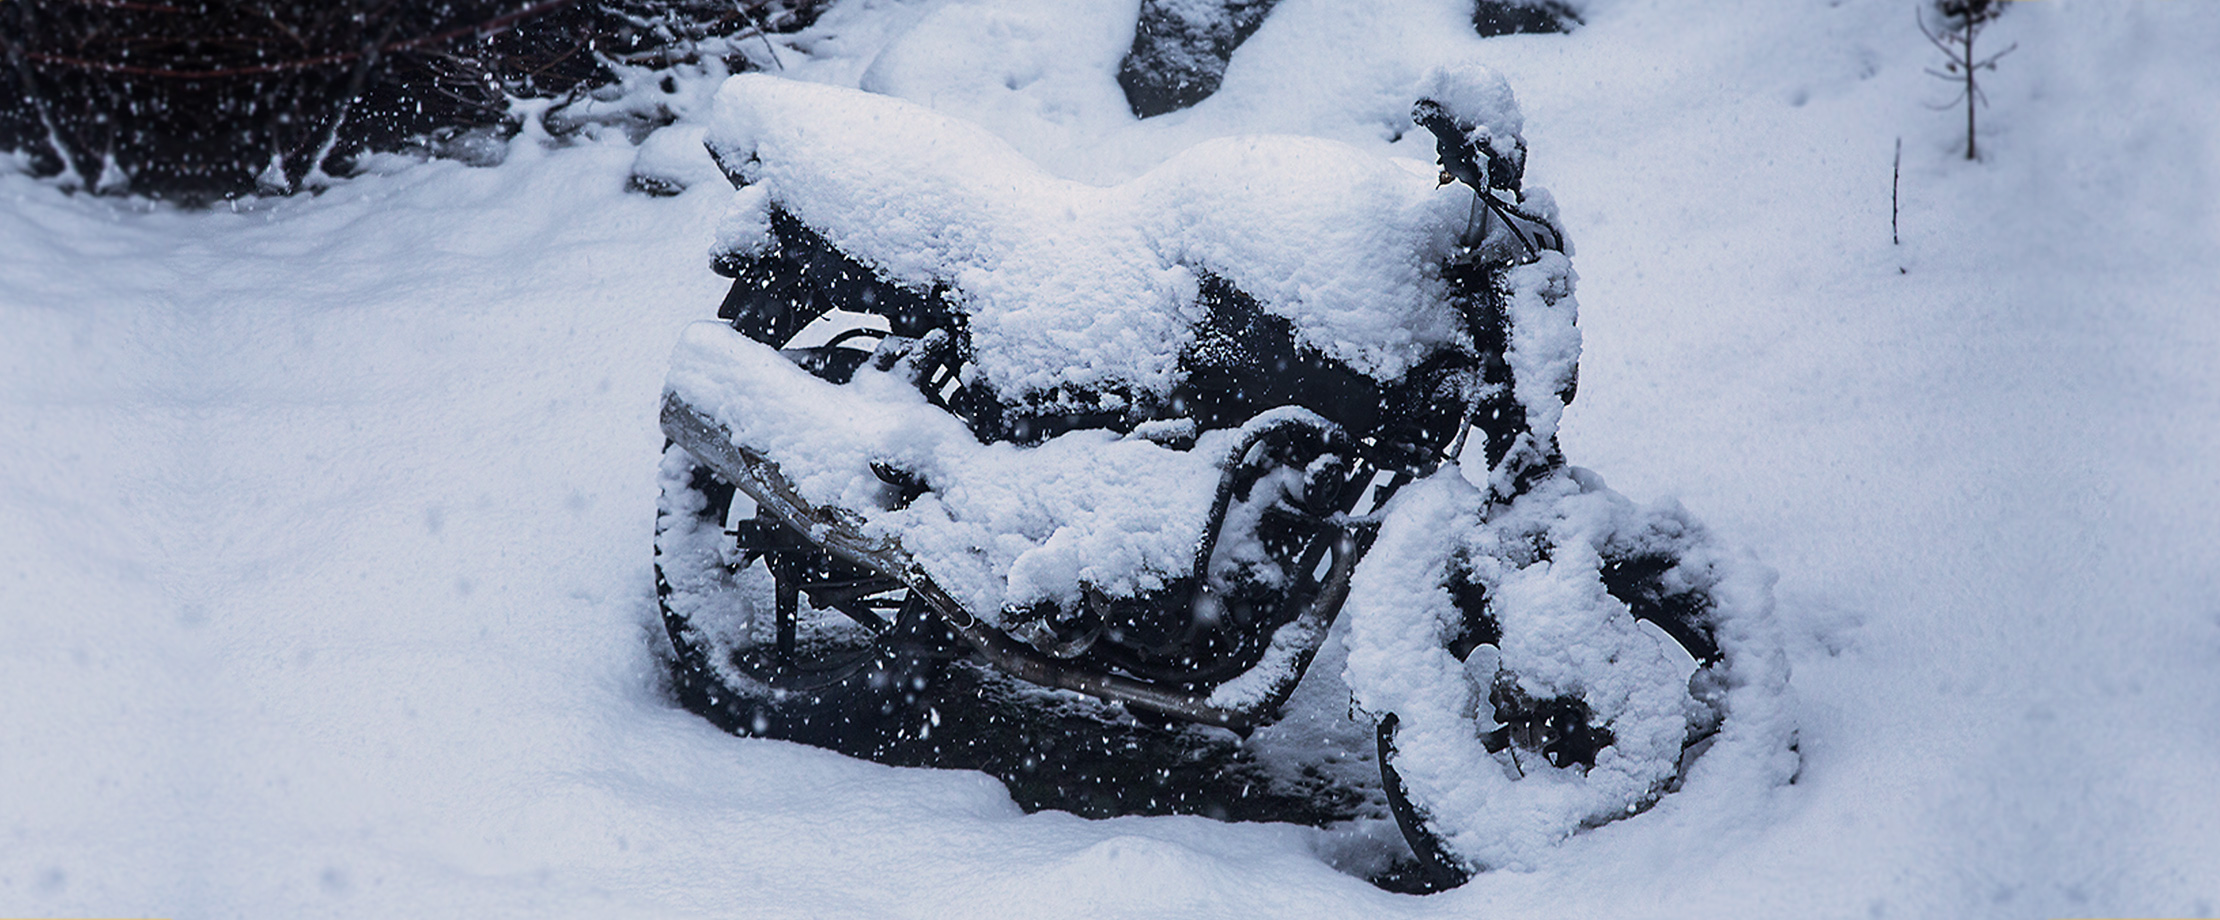 Ein schneebedecktes Motorrad steht im Wald. Der schwarze Lack ist unter der Schneemasse kaum zu sehen.